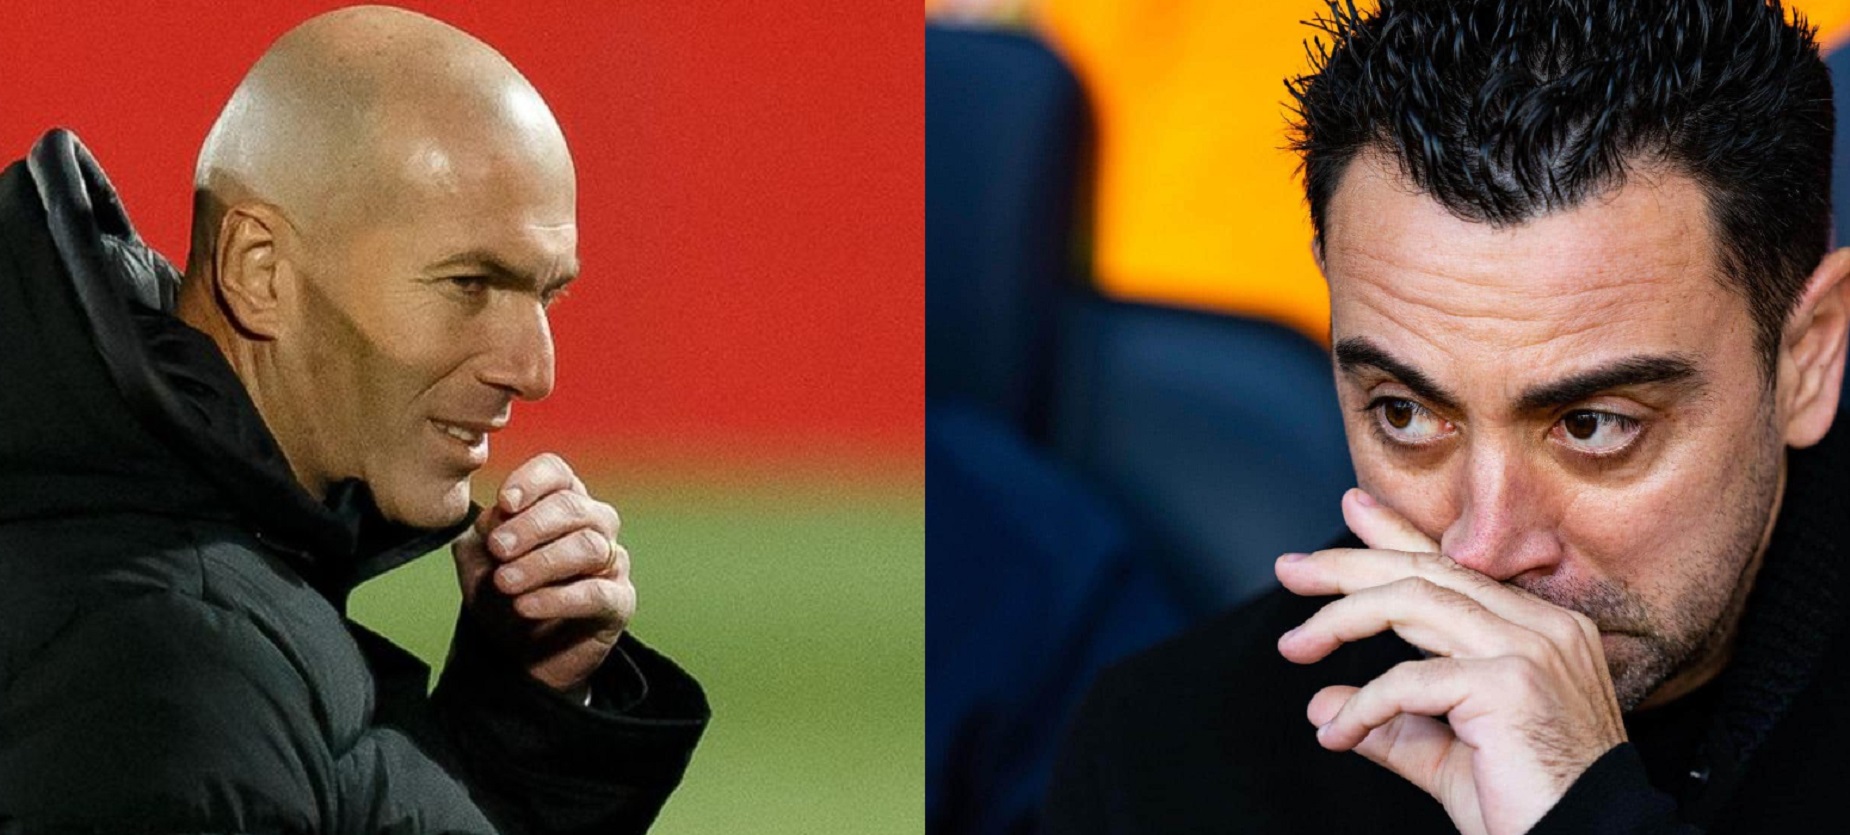 Xavi humilié par une comparaison avec Zidane, des chiffres désastreux pour l’entraîneur du Barça